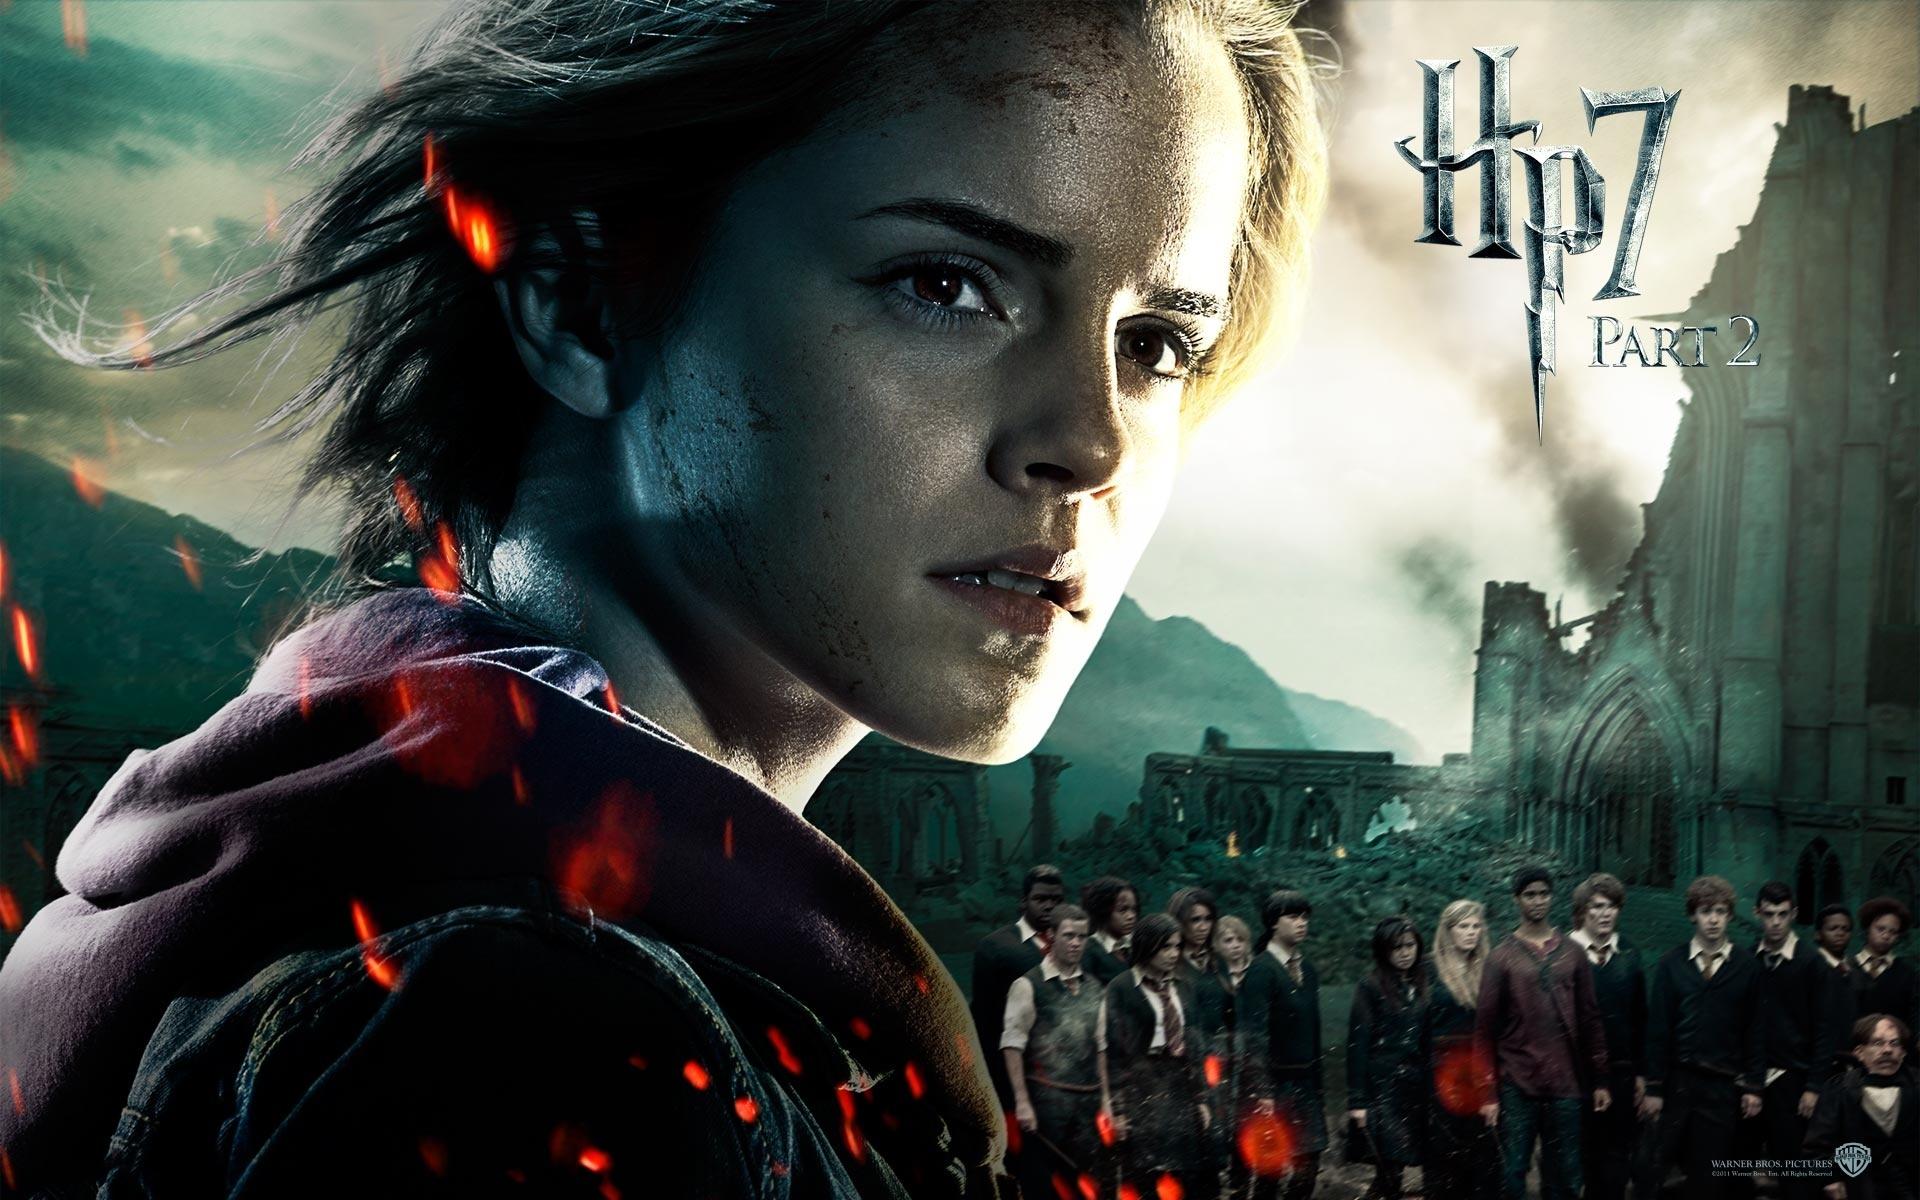 Fondos de Pantalla Harry Potter Harry Potter y las Reliquias de la Muerte  Emma Watson Película descargar imagenes